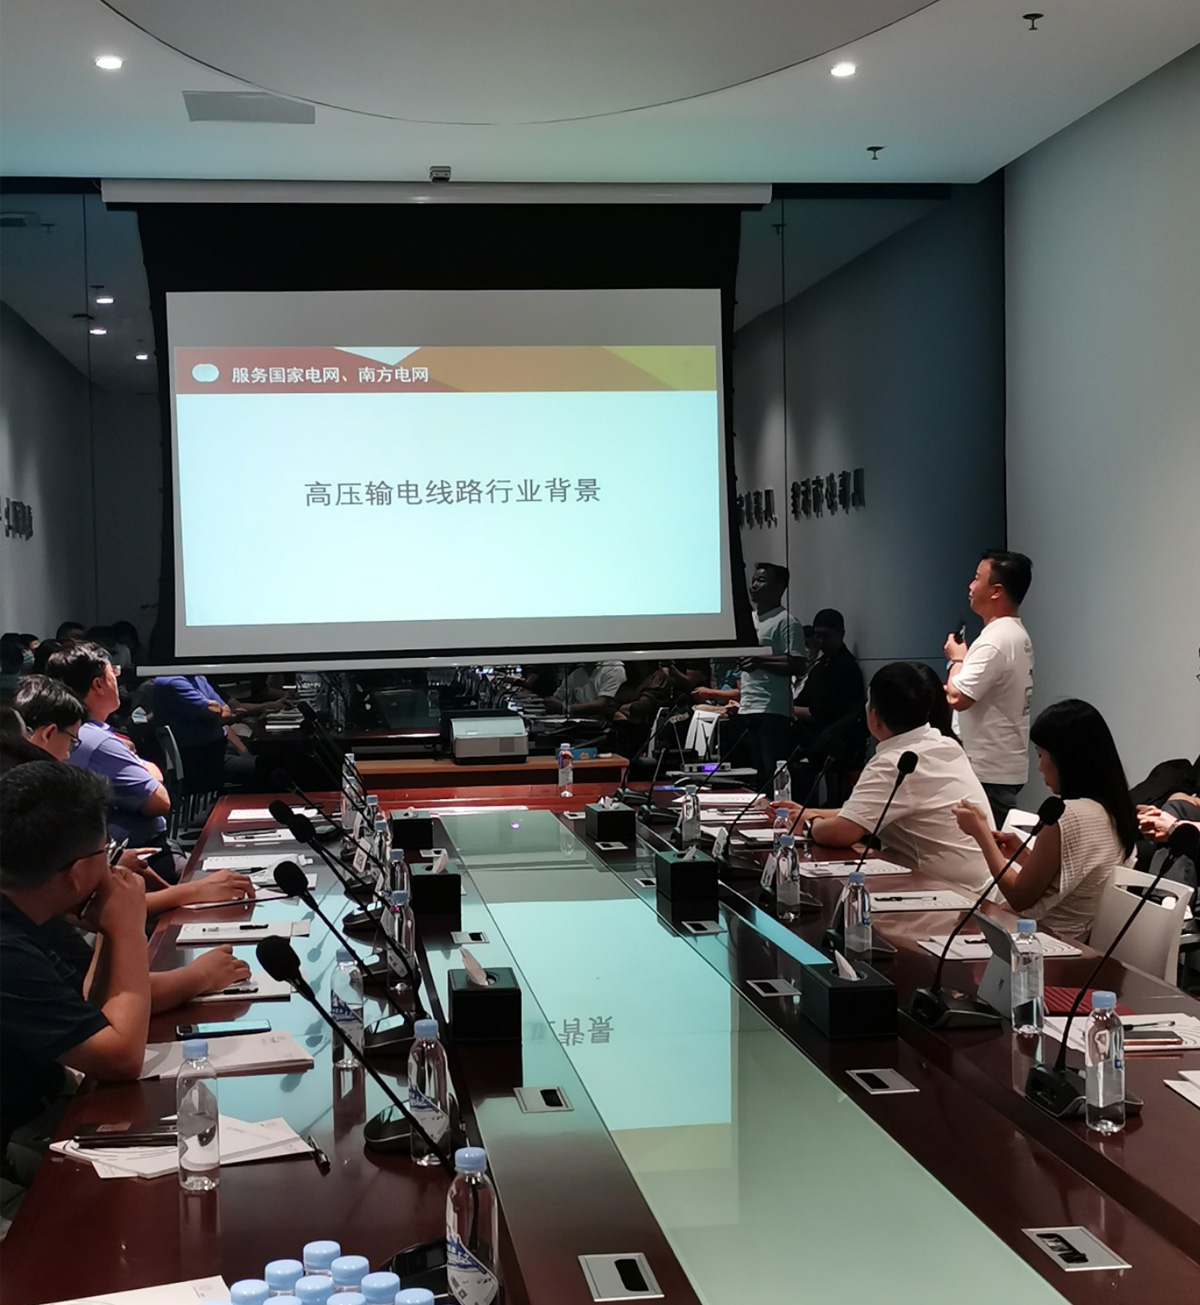 BOB体育综合官方平台参加科创中国活动